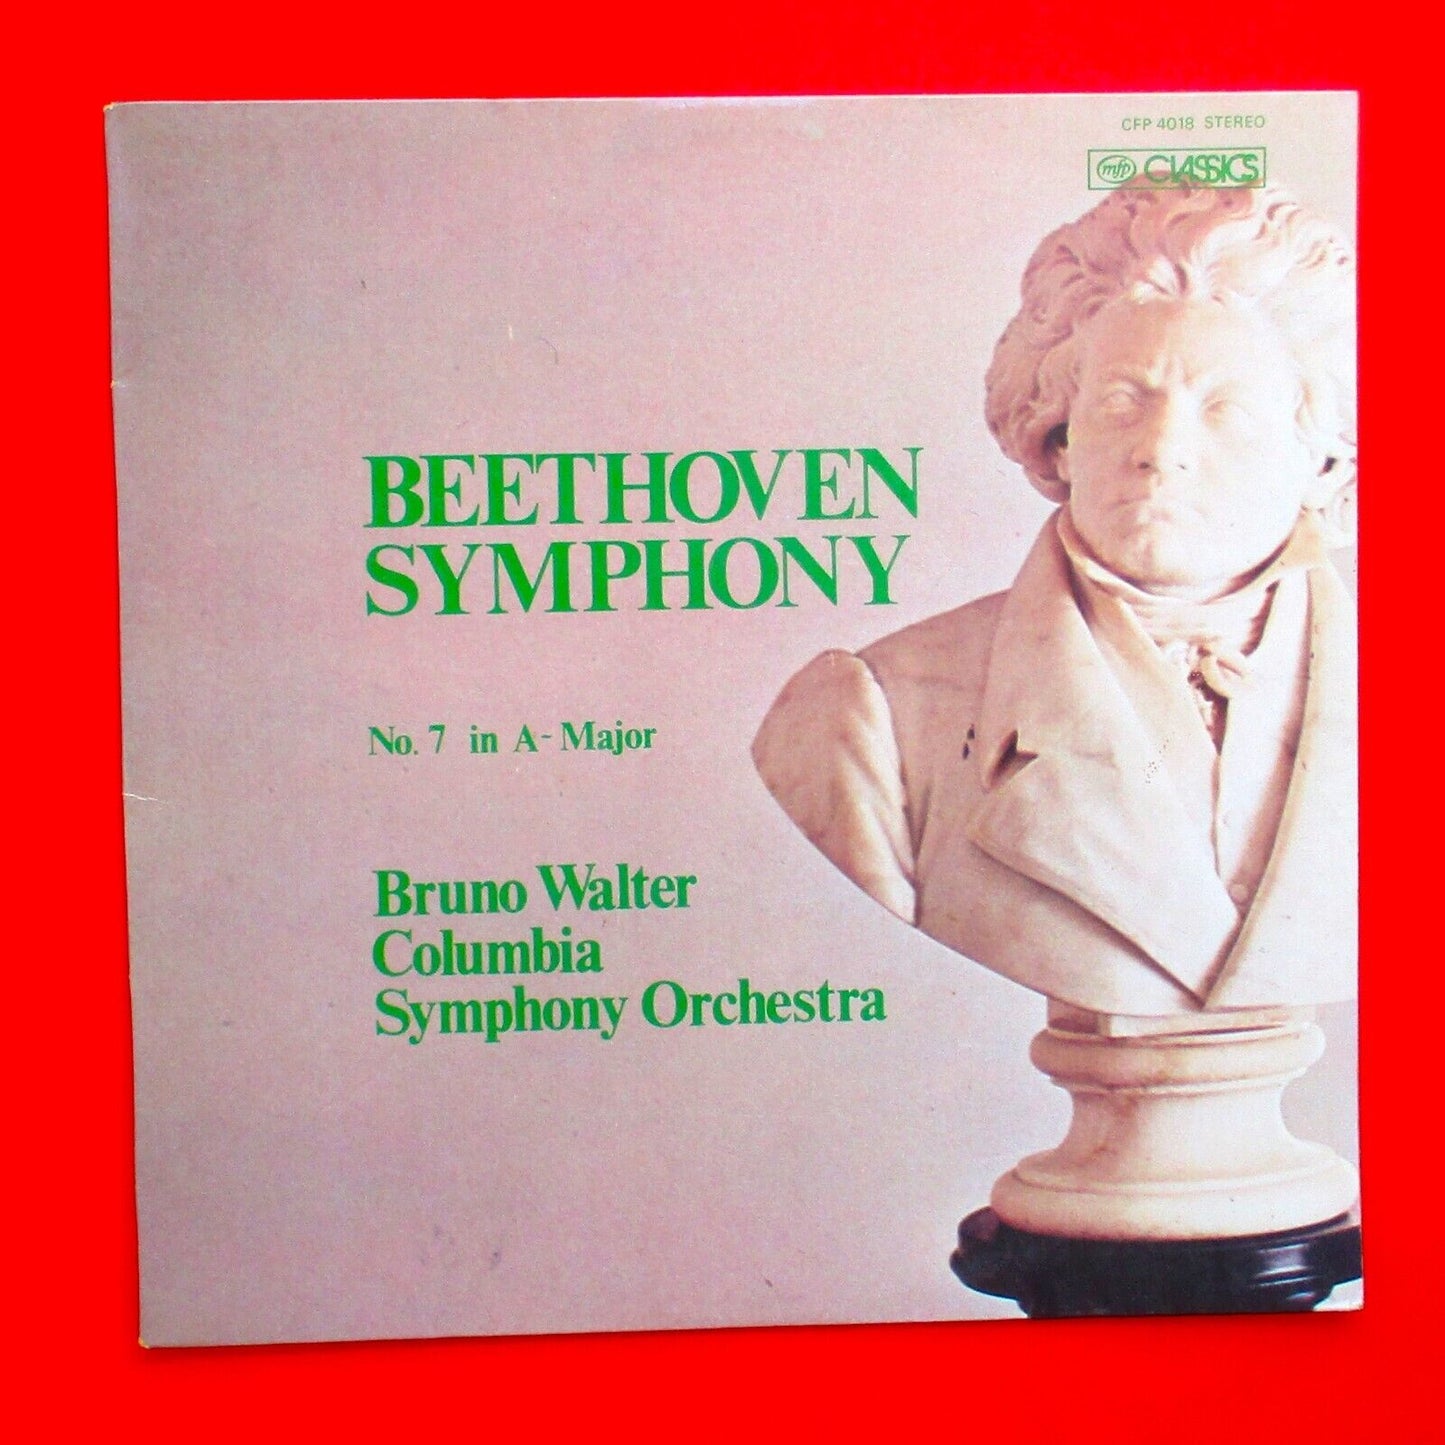 Beethoven Symphony No. 7 In A Major Vinyl Album LP Australian Pressing